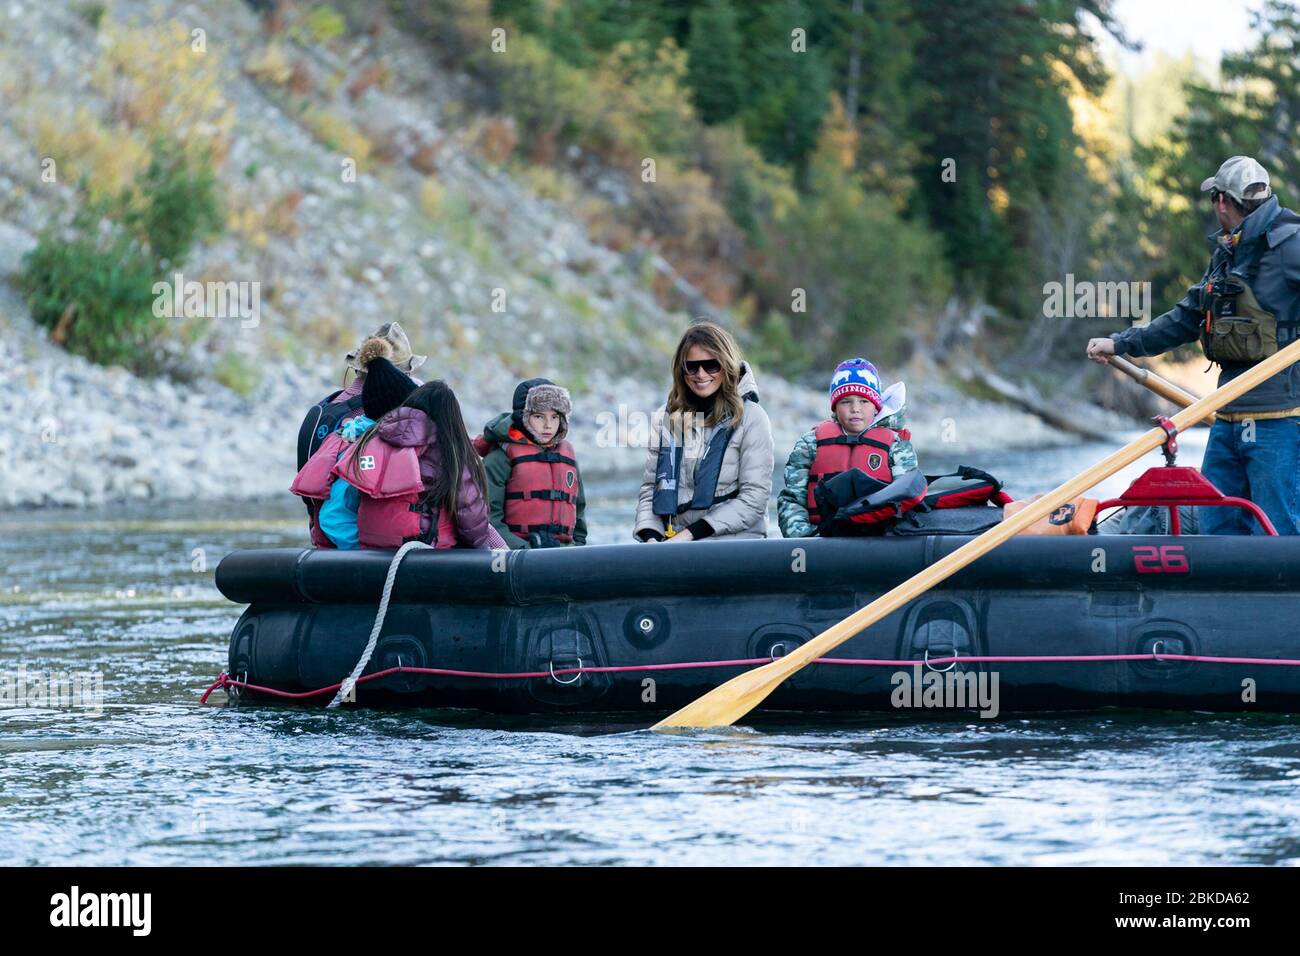 First Lady Melania Trump e studenti di quarta classe del distretto scolastico della contea di Teton partecipano a un tour in zattera del fiume Snake River Giovedi, 3 ottobre 2019, a Moose, Wyo.a. prima visita di First Lady Melania Trump nel Wyoming Foto Stock